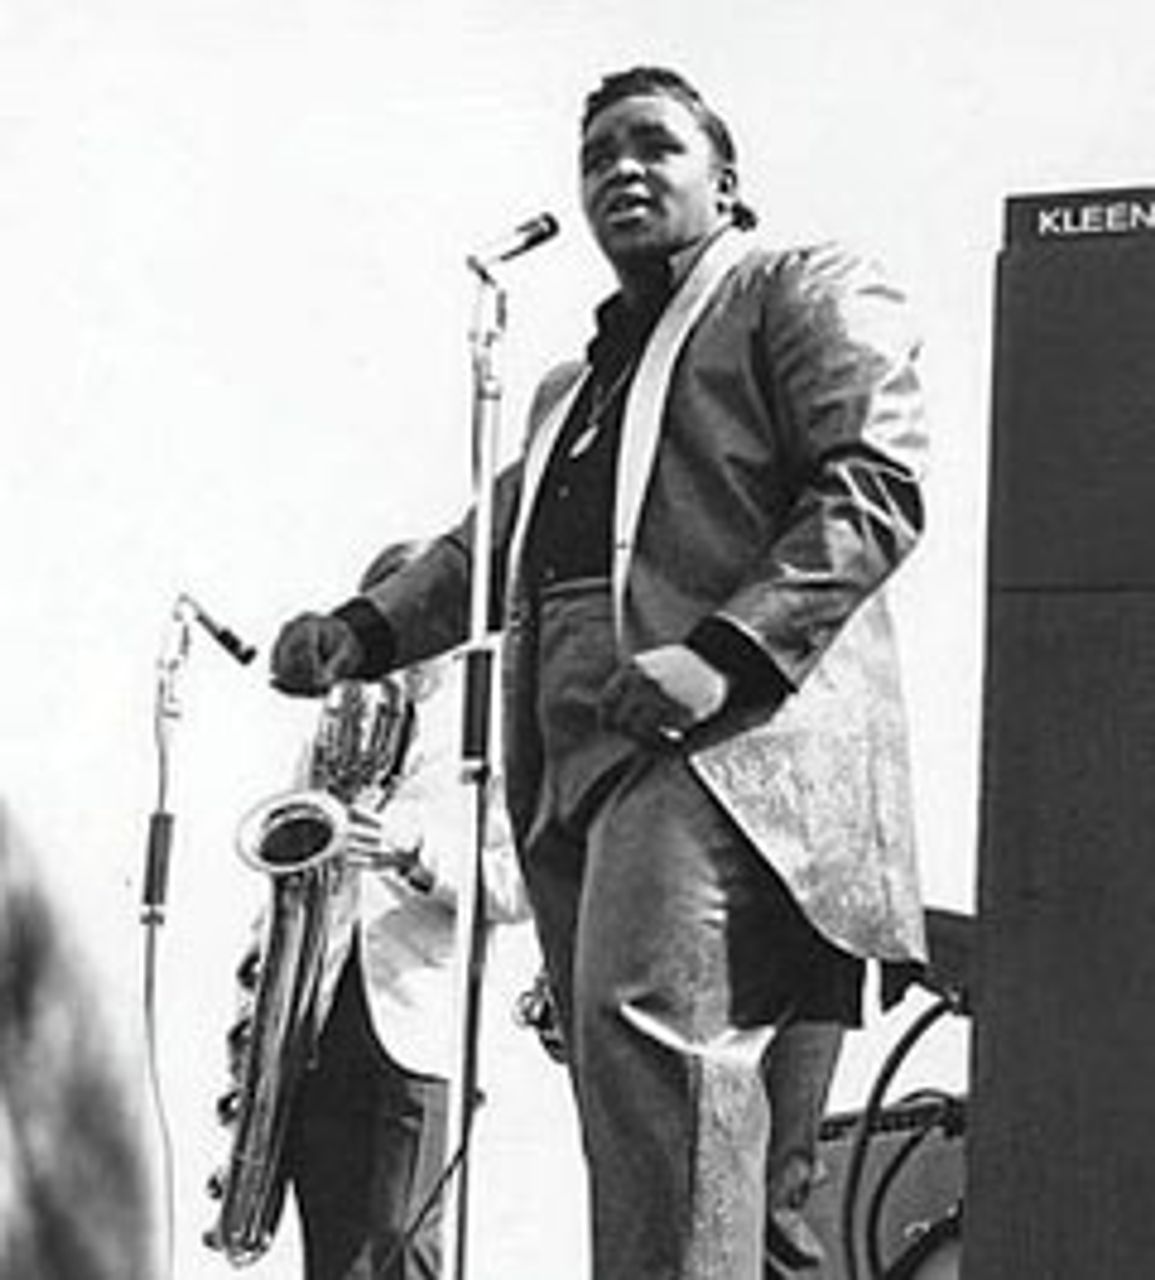 Burke performing in 1965